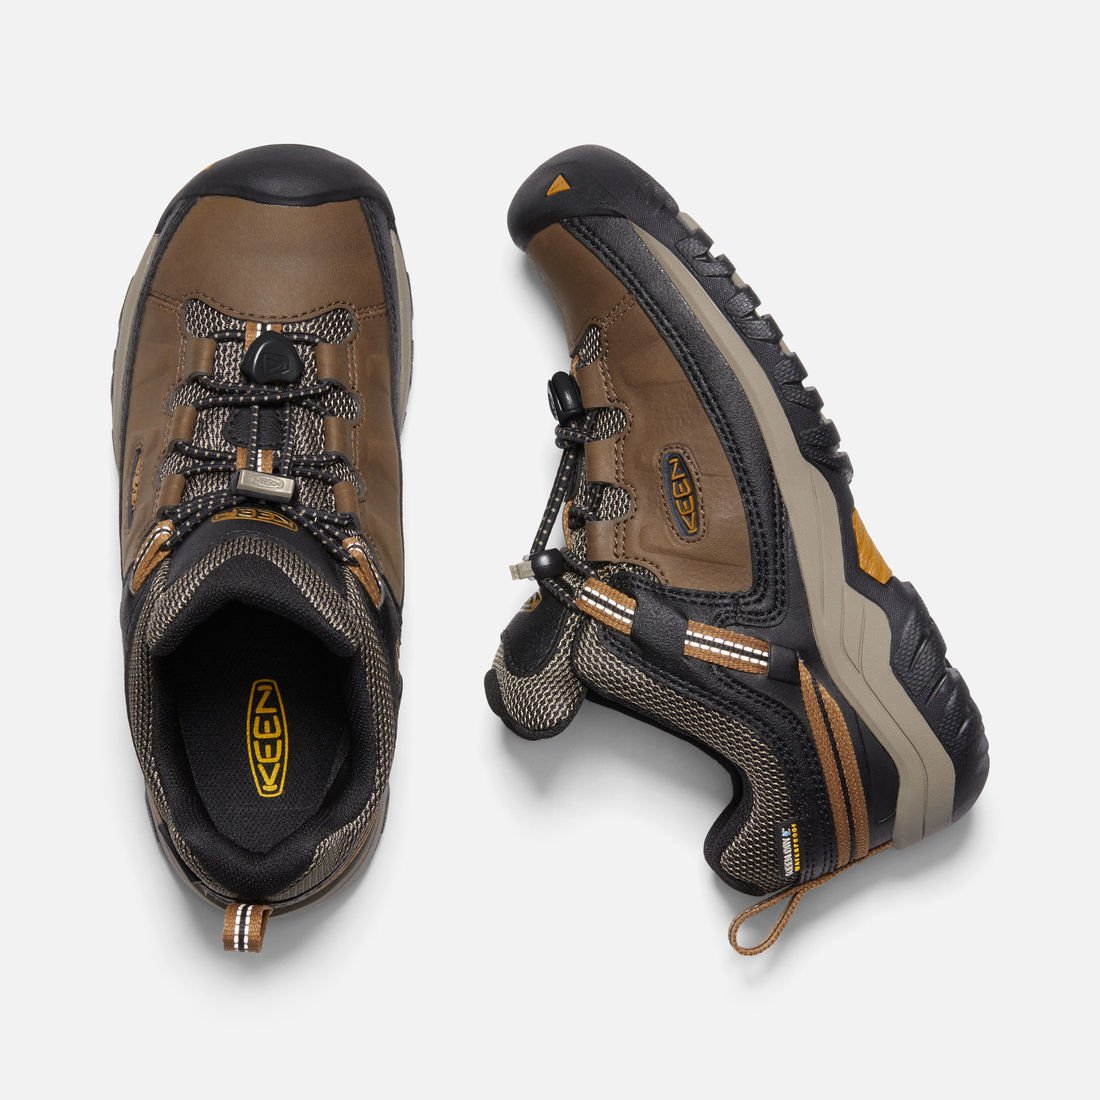 Big Kids Targhee Waterproof Hiking Shoe - Dark Earth/Golden Brown